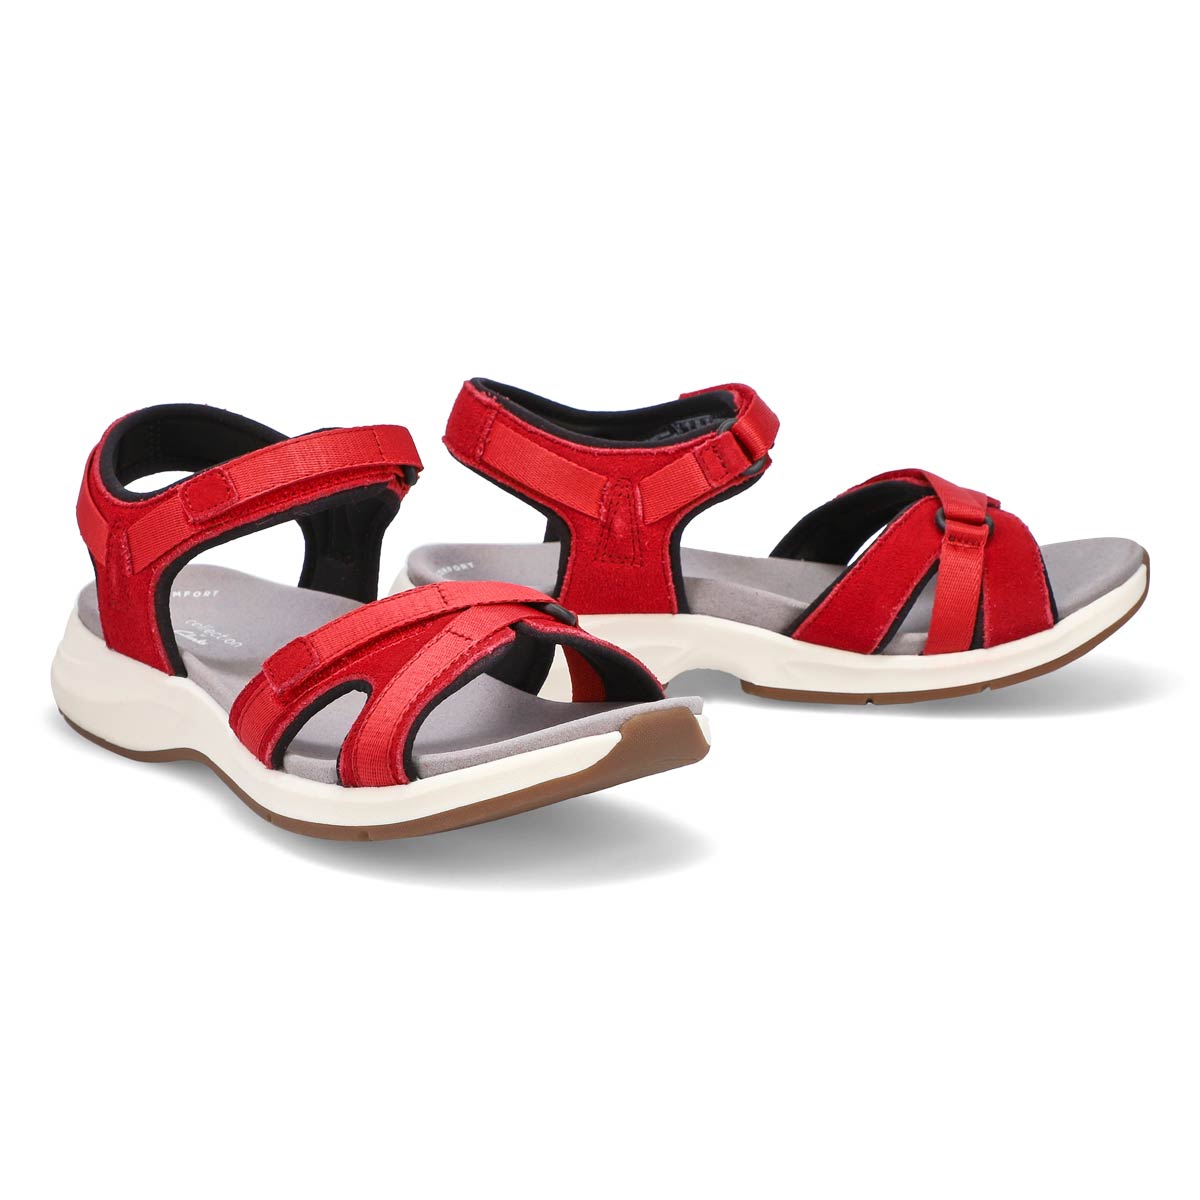 Women's Solan Drift Sandal - Red